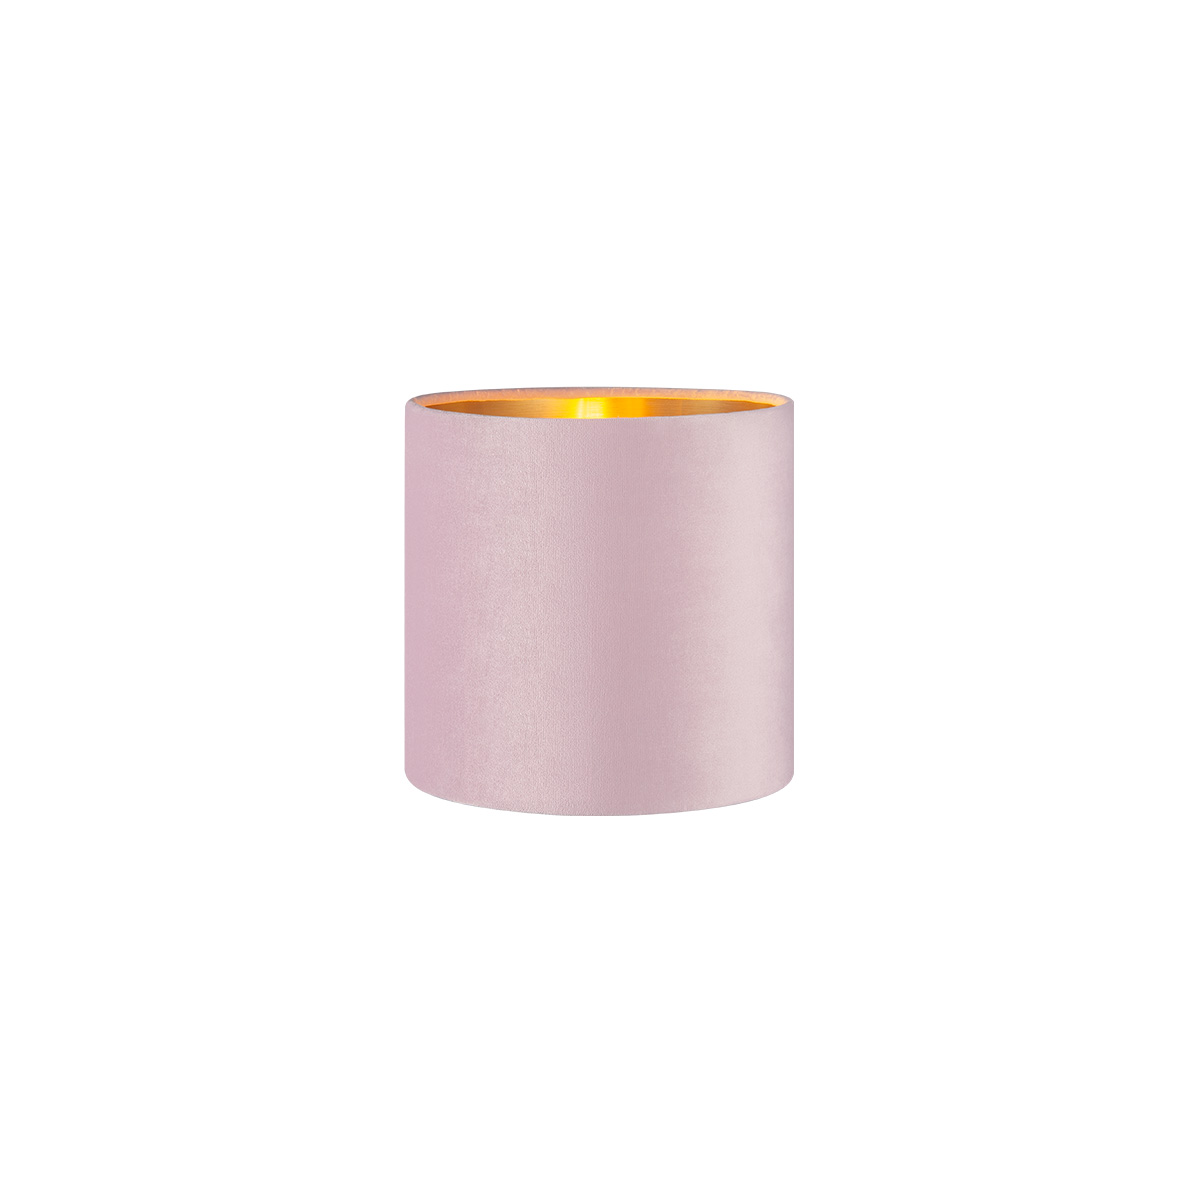 Tangla lighting - TLS7564-15PK - Lampshade - velvet - pink - diameter 16cm - E27